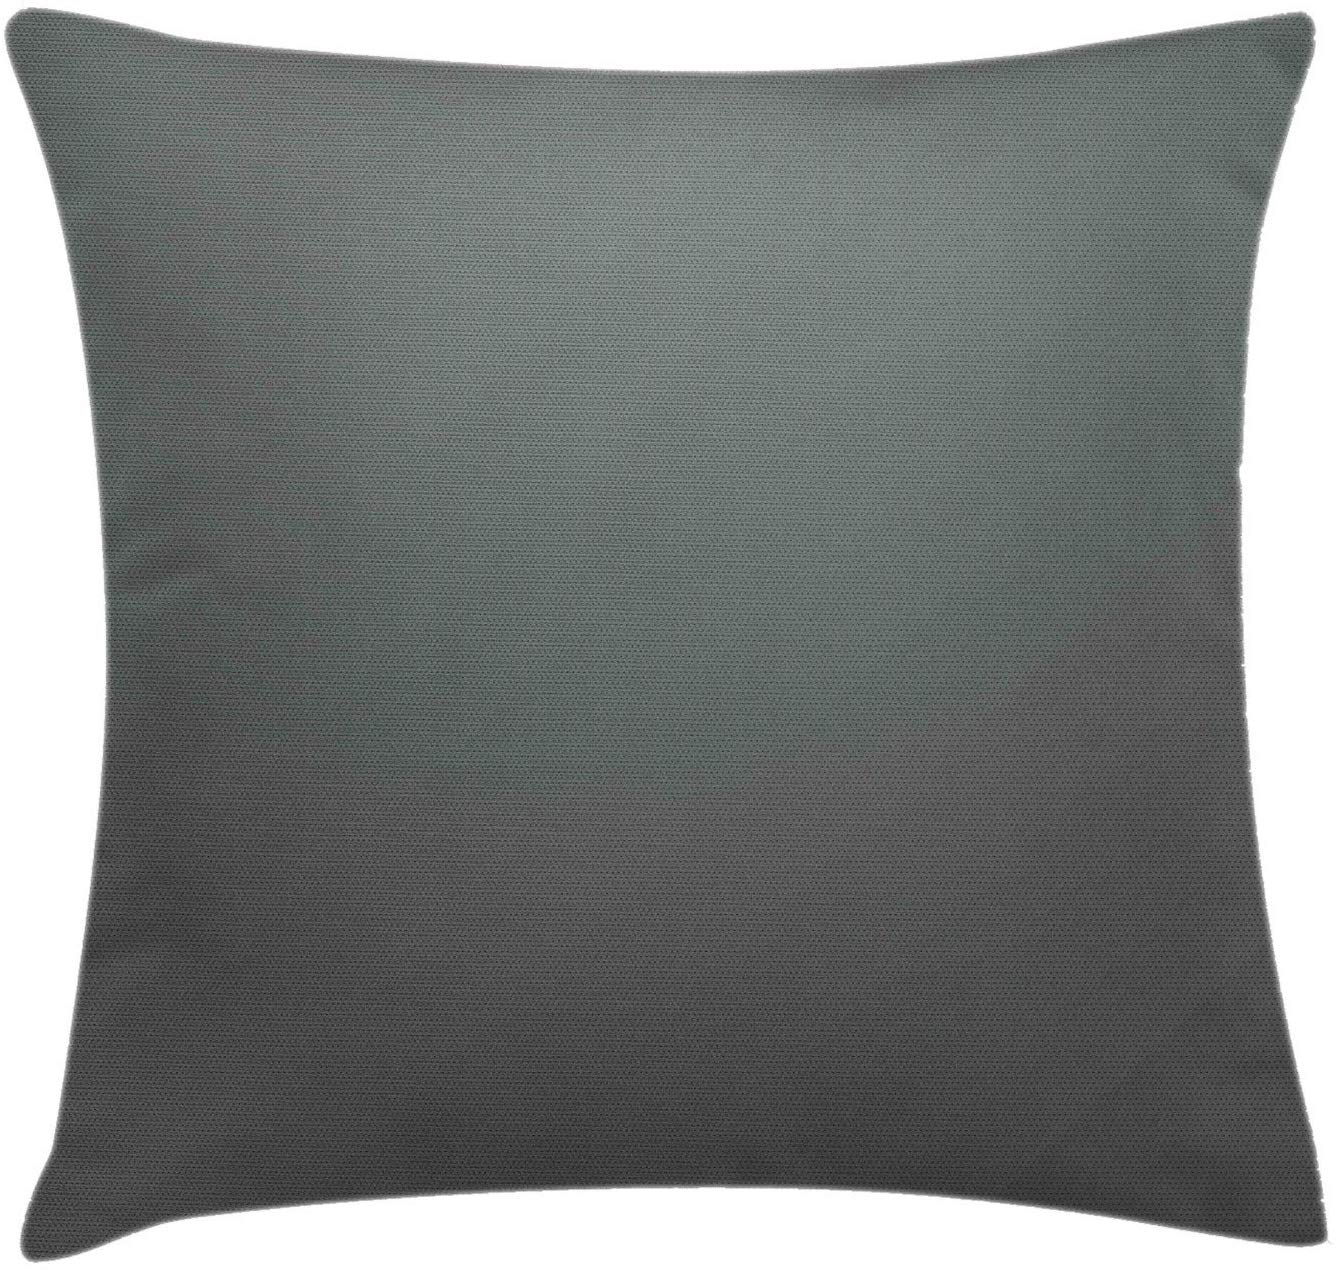 Abakuhausus De_2 Cushion Cover Multicoloured, 50 Cm X 50 Cm